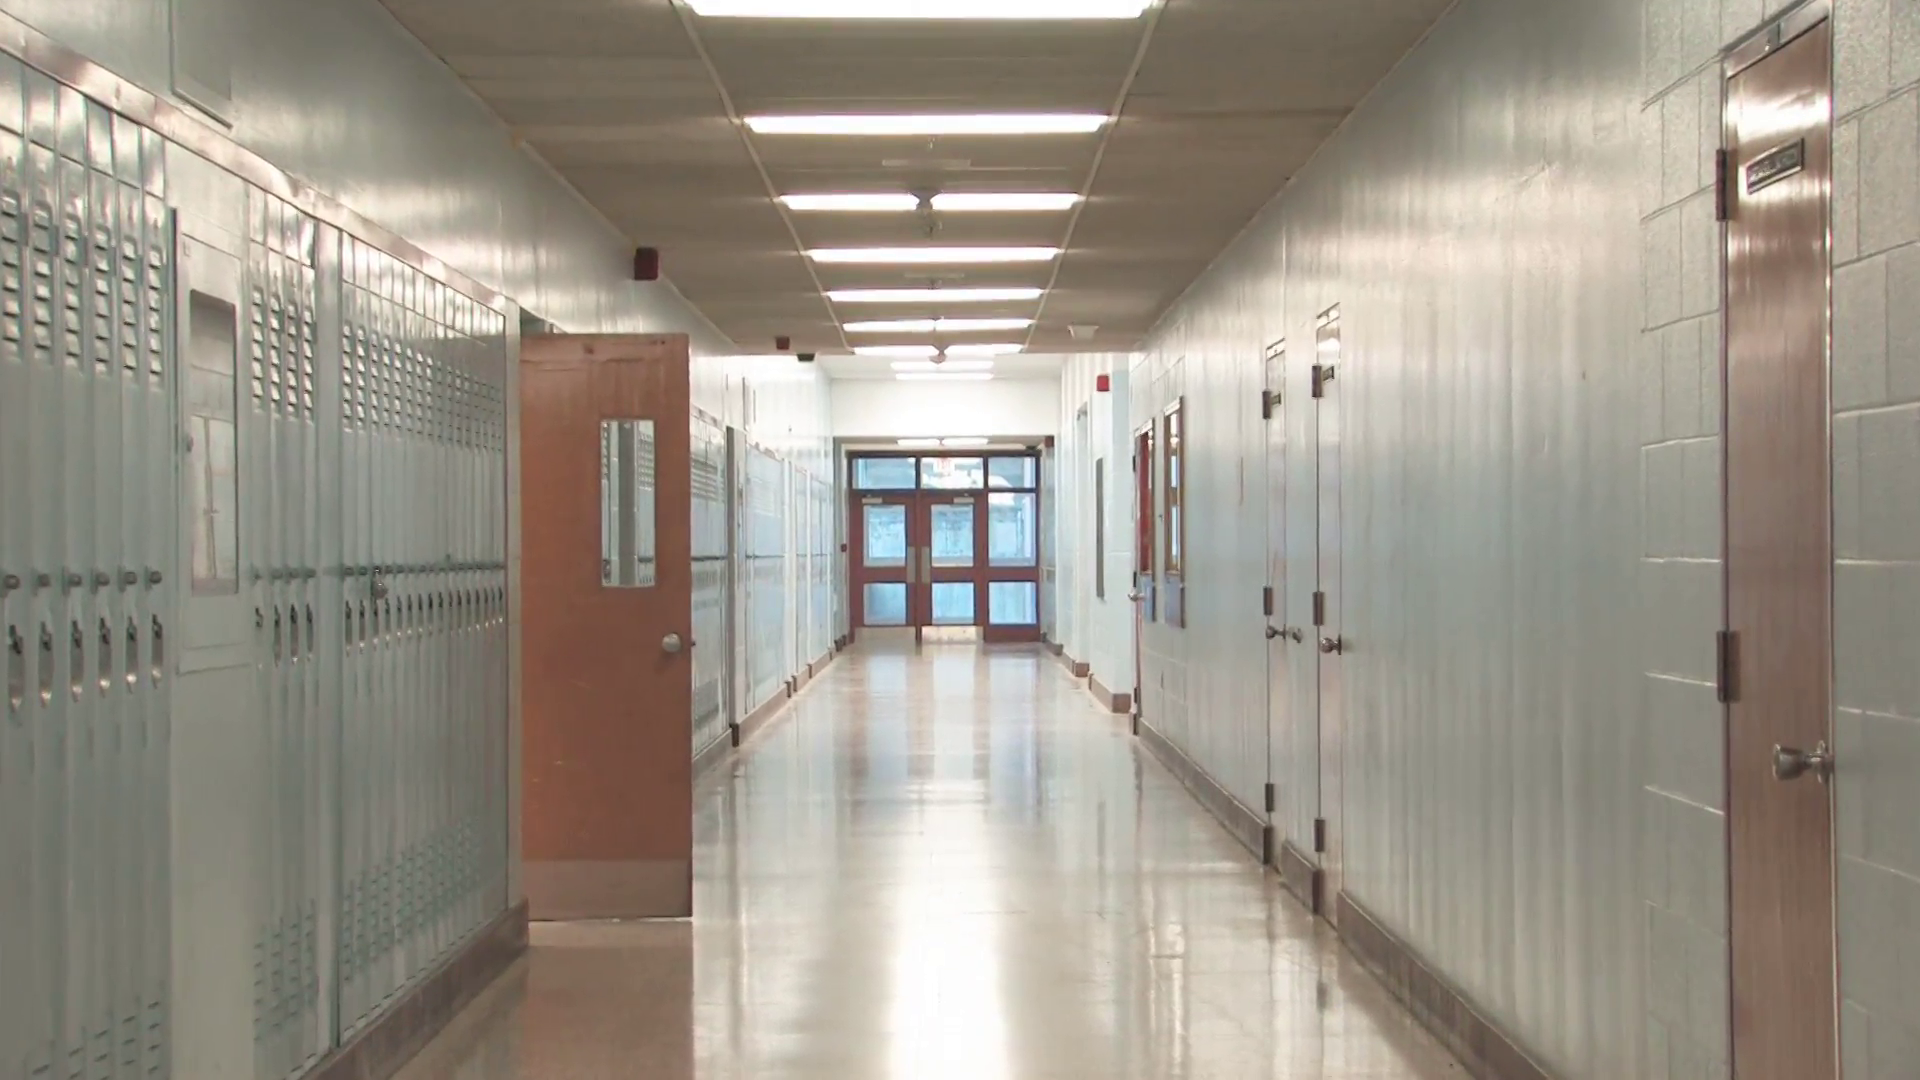 Image result for high school hallway. School hallways, Hallway wallpaper, School